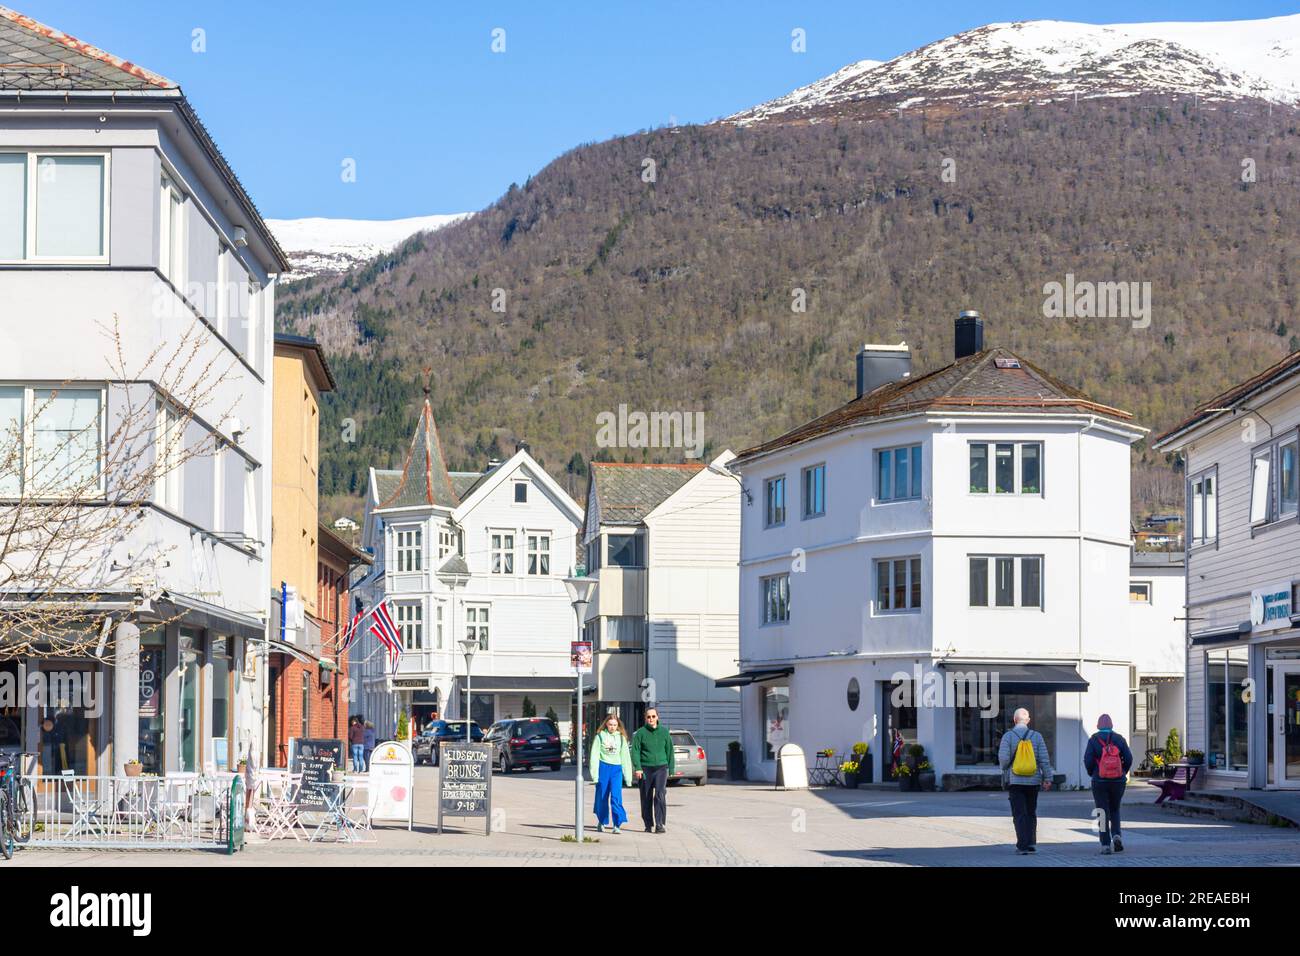 Centro città, Eidsgata, Nordfjordeid, Vestland County, Norvegia Foto Stock